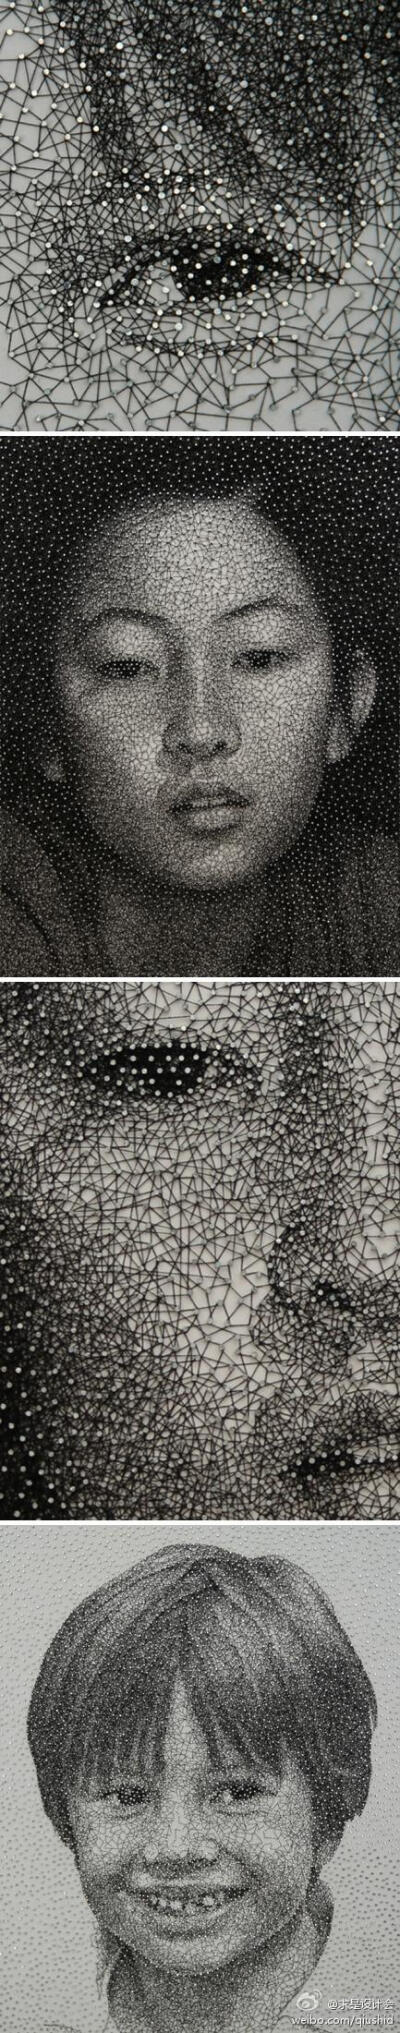 引人瞩目的肖像画，来自Kumi Yamashita，作者用镀锌钉和缝纫黑线用指甲缠裹而成的肖像画，十分精致闪耀。